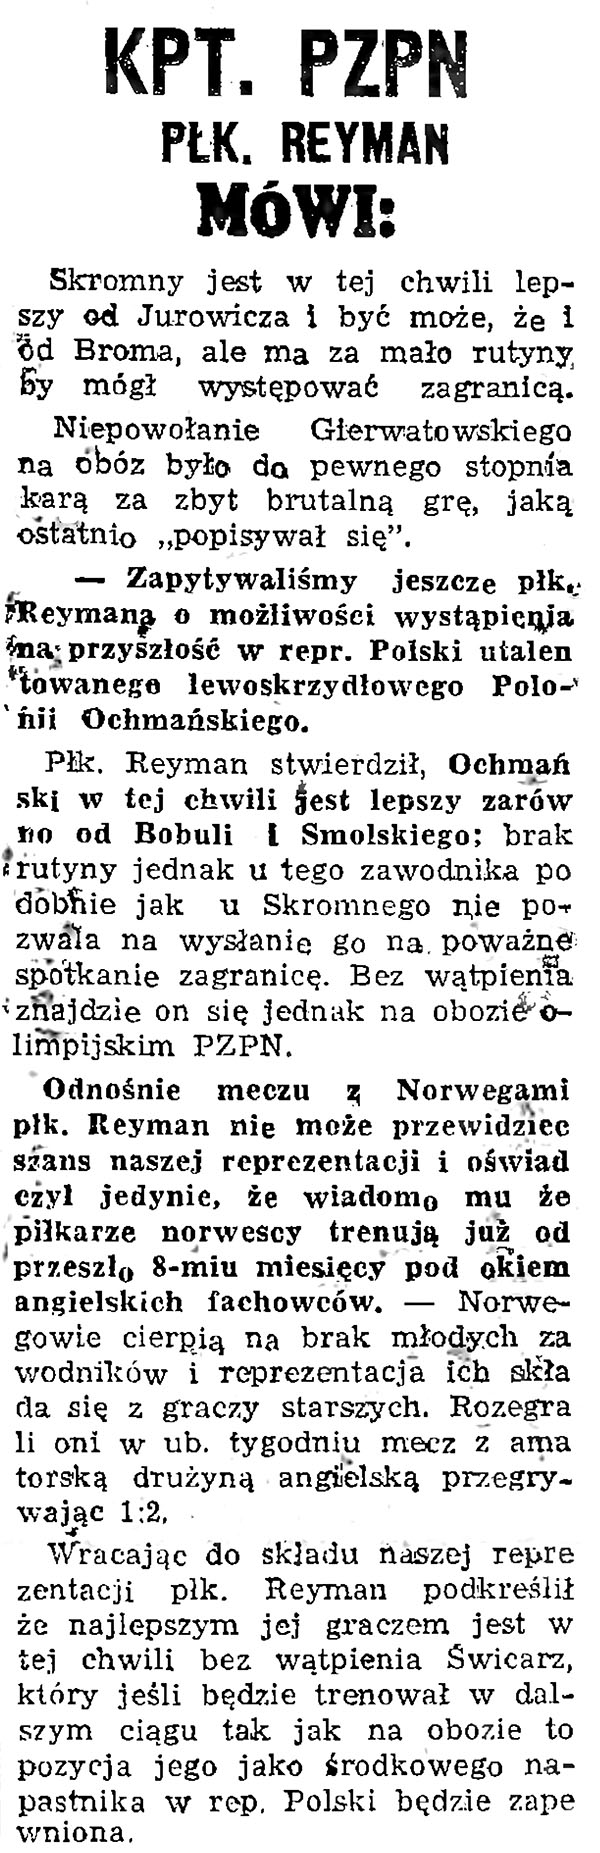 Wypowiedź kapitana PZPN, Henryka Reymana, na łamach „Sportu” (1947 r.). Źródło: Biblioteka Narodowa